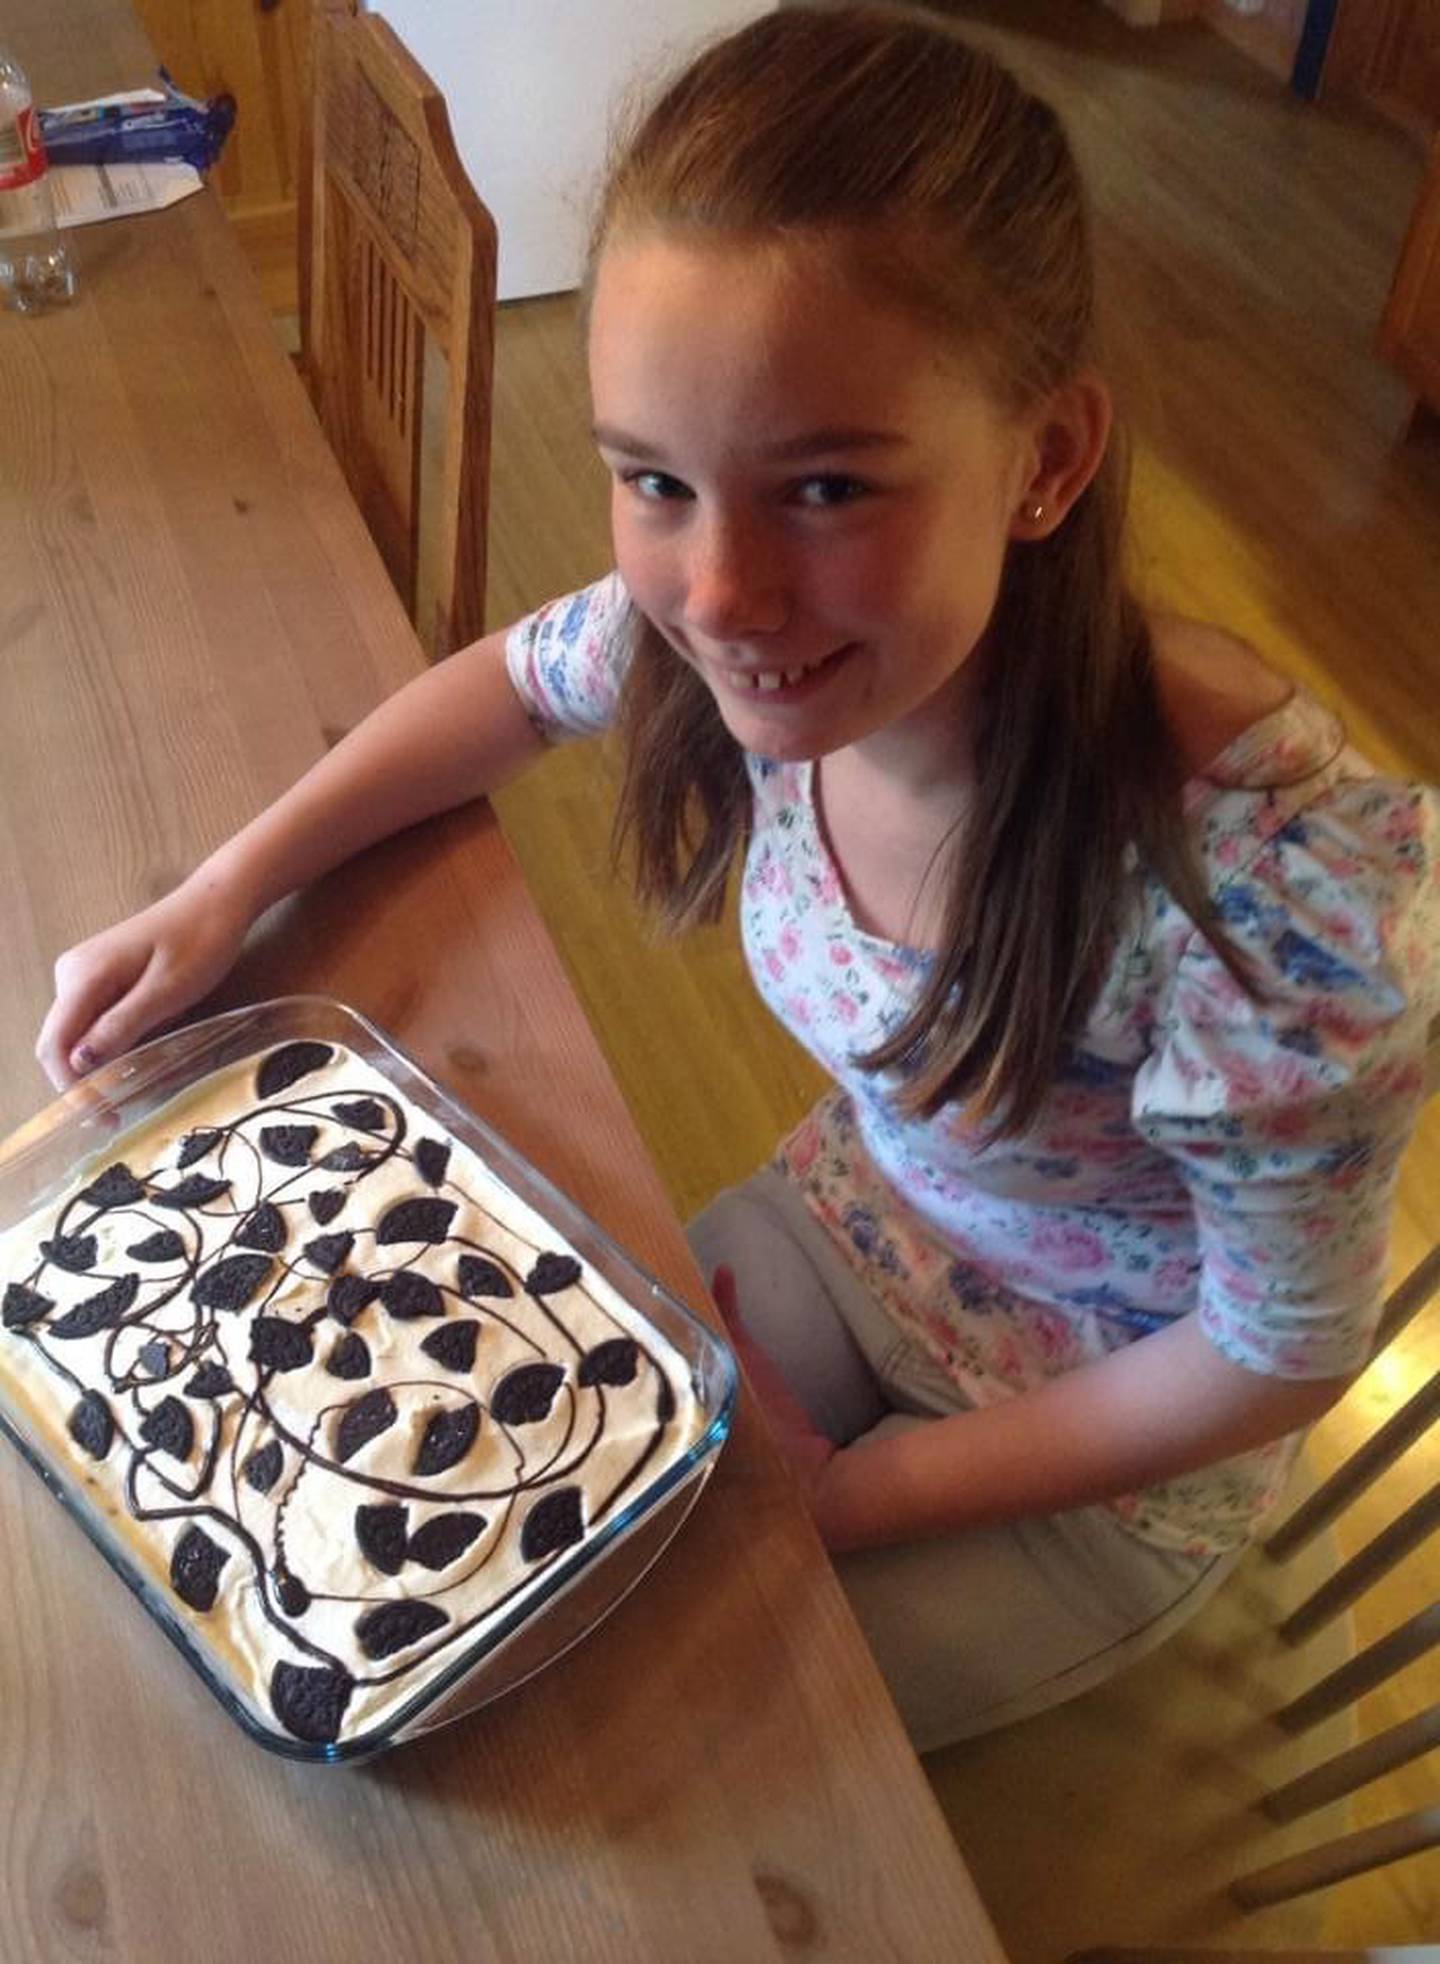 Hjemme på kjøkkenet i Skiptvet. Ann Helen er elleve år og har bakt kake til brorens konfirmasjon.